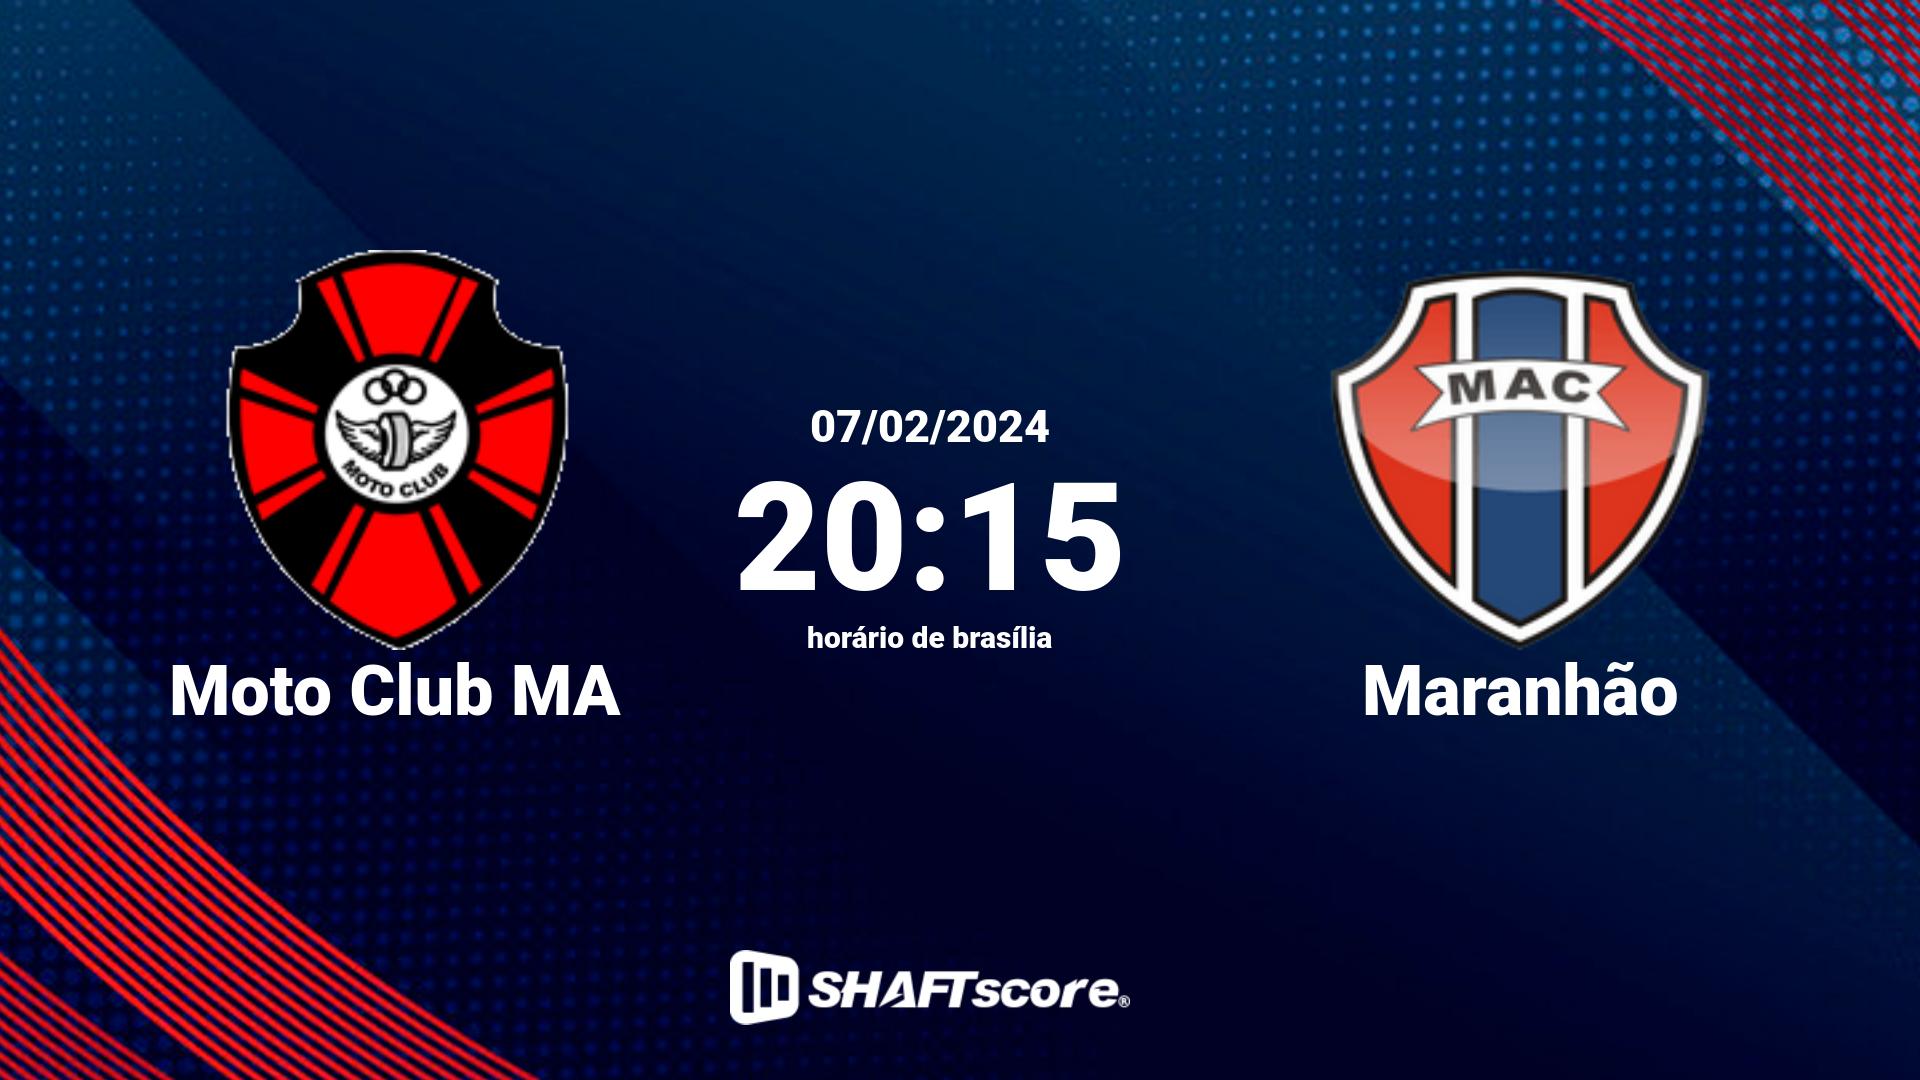 Estatísticas do jogo Moto Club MA vs Maranhão 07.02 20:15